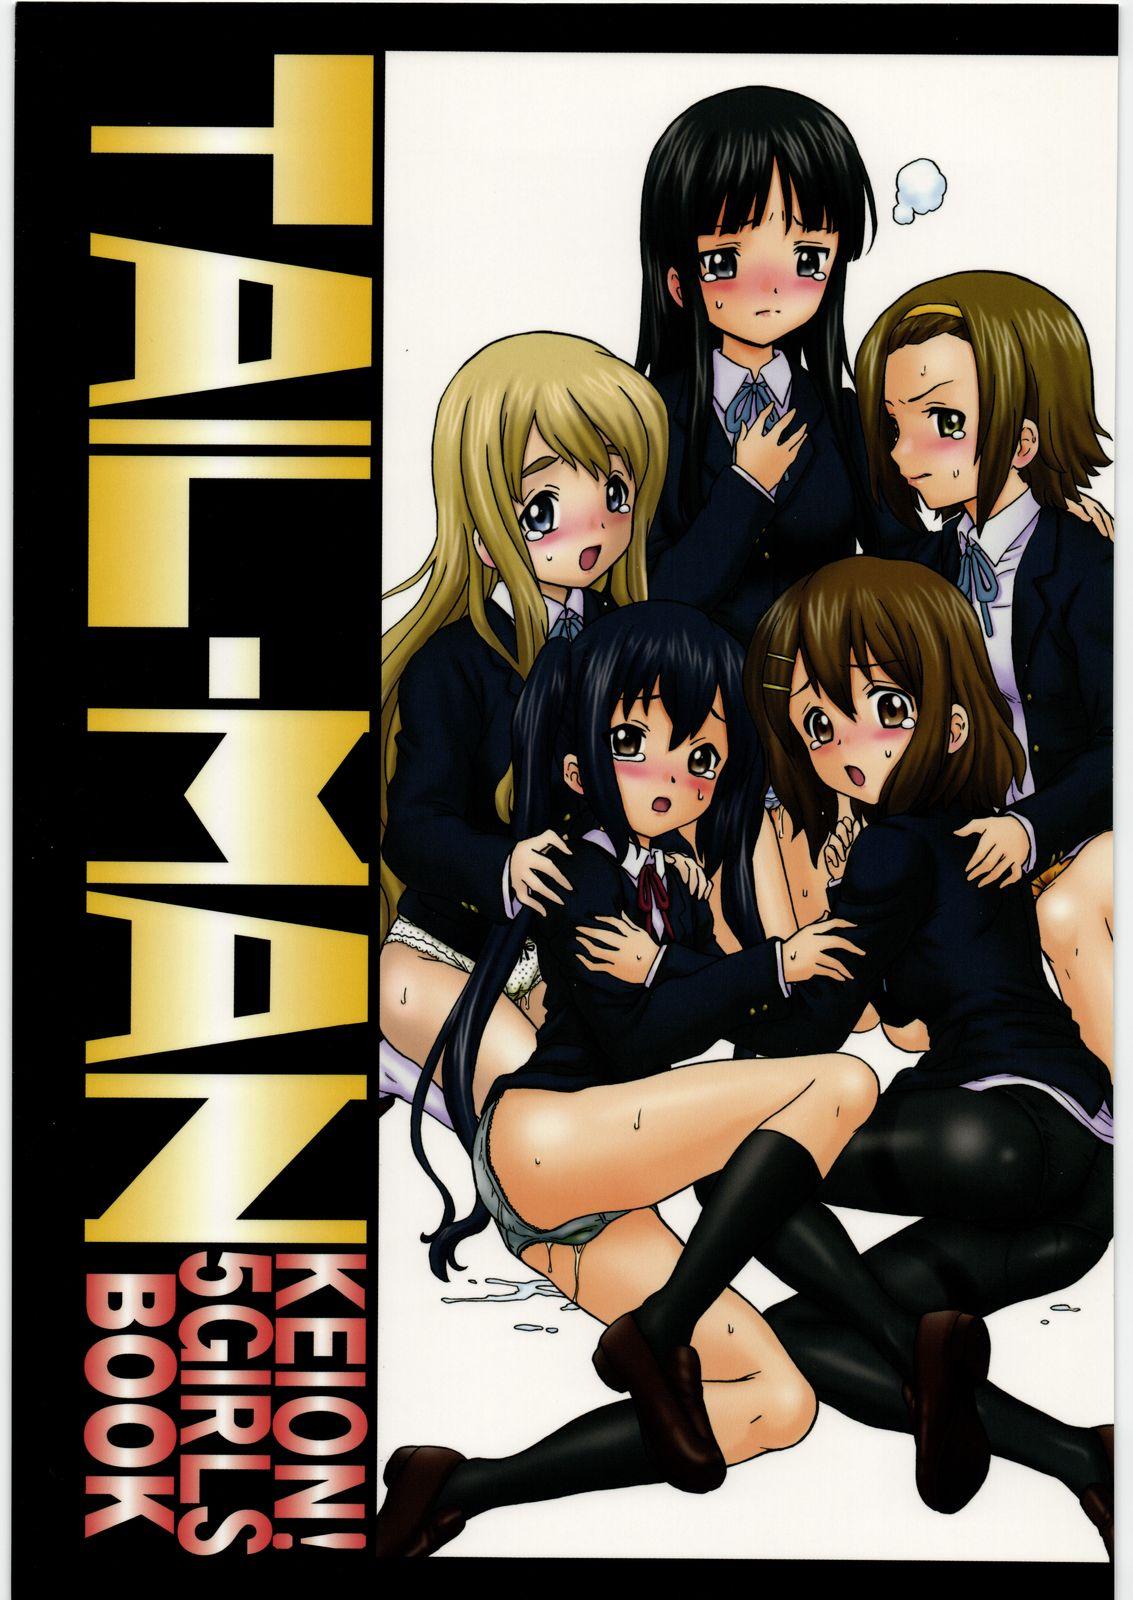 TAIL-MAN KEION! 5 GIRLS BOOK 0